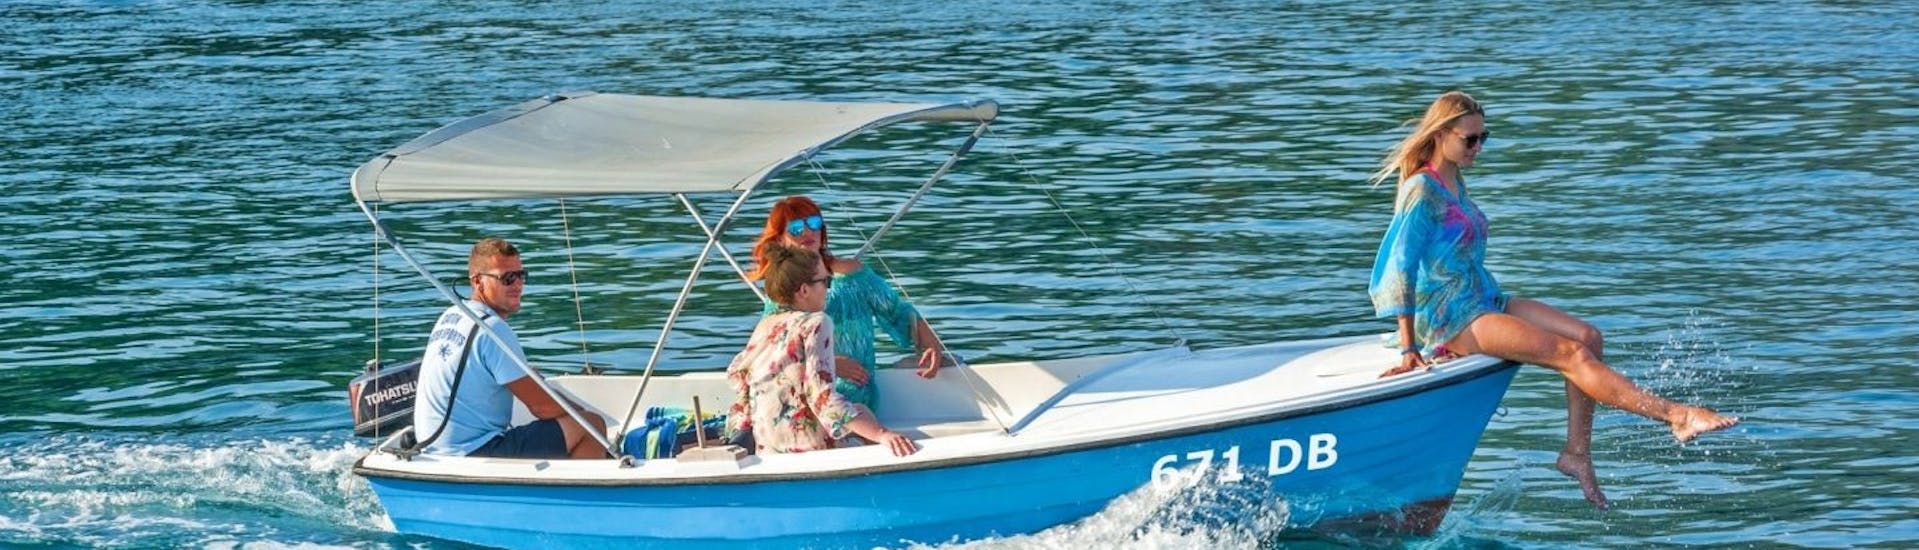 Immagine di una famiglia durante una gita privata in barca con Dubrovnik Islands Tours.